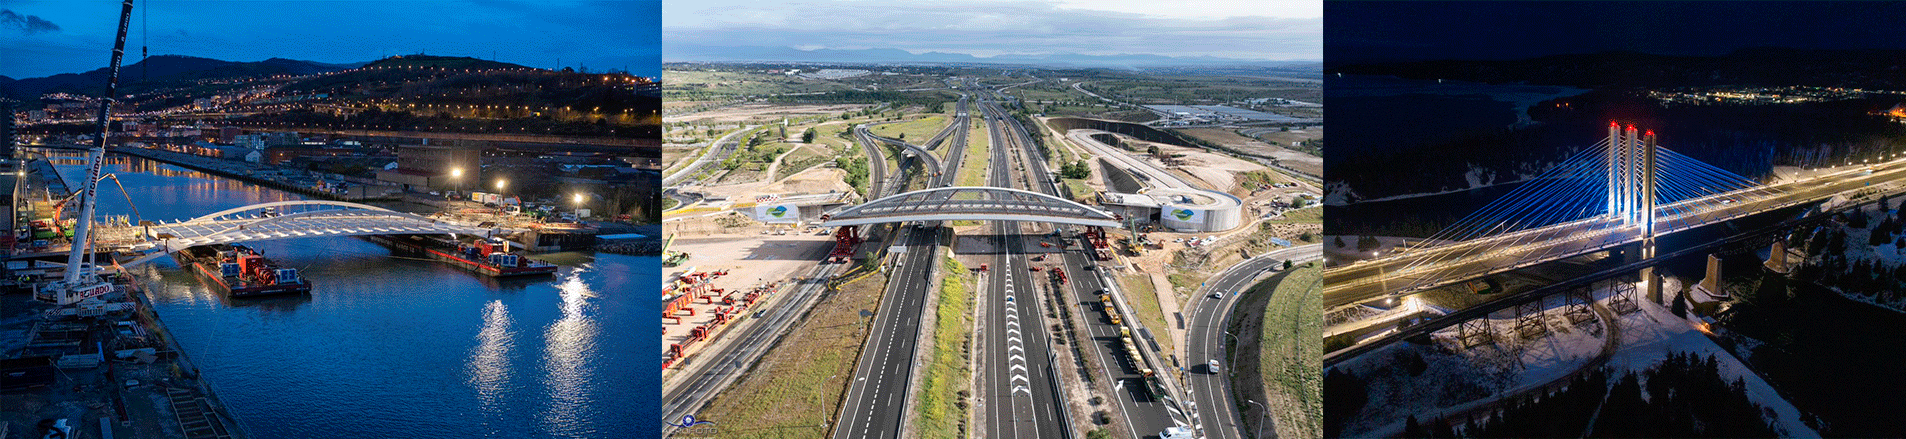 Los proyectos de Ferrovial son un claro ejemplo de innovación en infraestructuras.